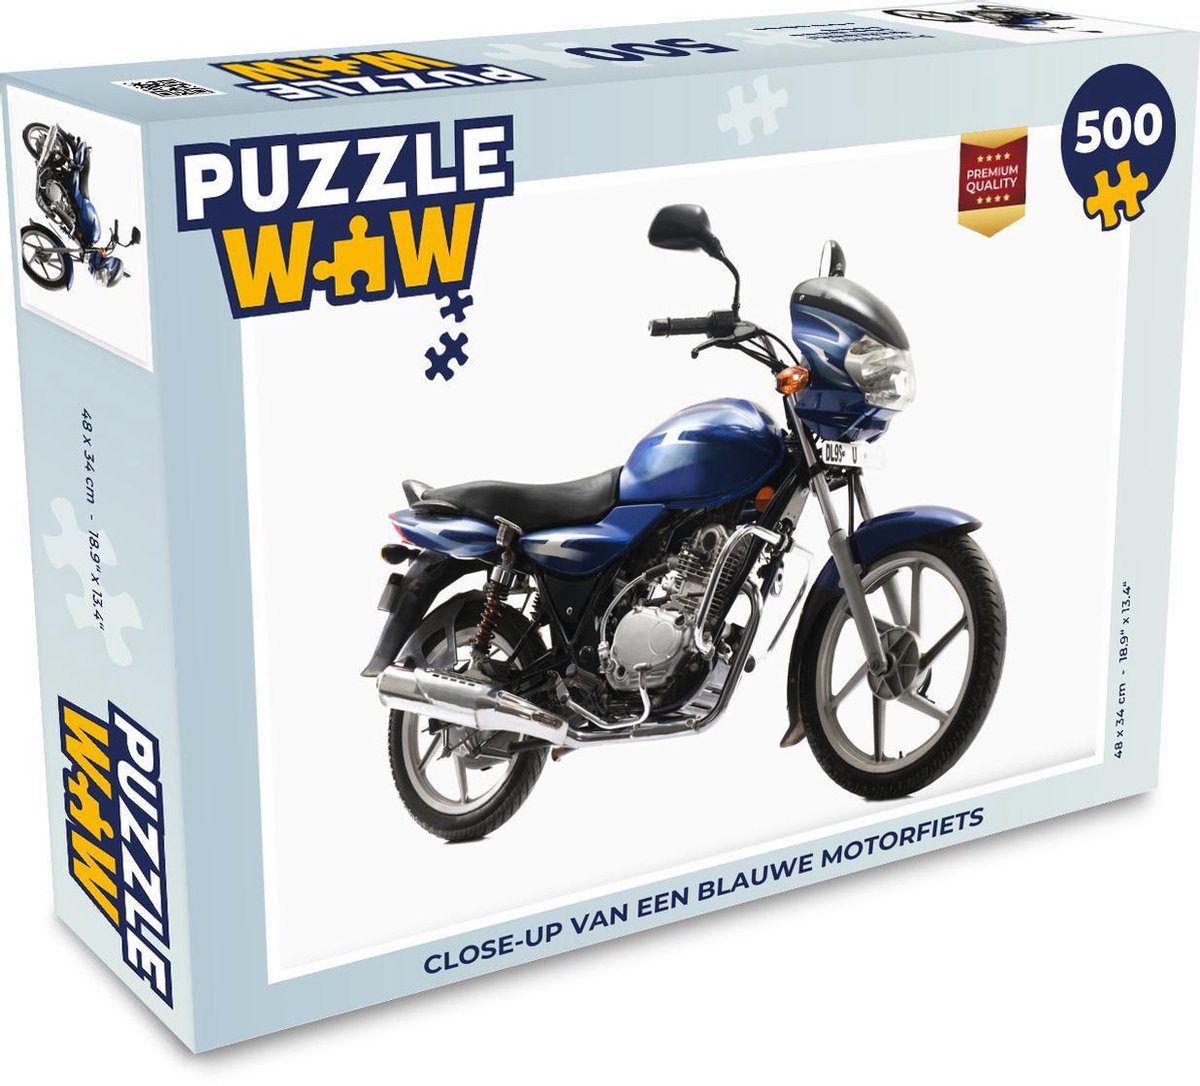 Afbeelding van product Puzzel 500 stukjes Motoren - Close-up van een blauwe motorfiets - PuzzleWow heeft +100000 puzzels